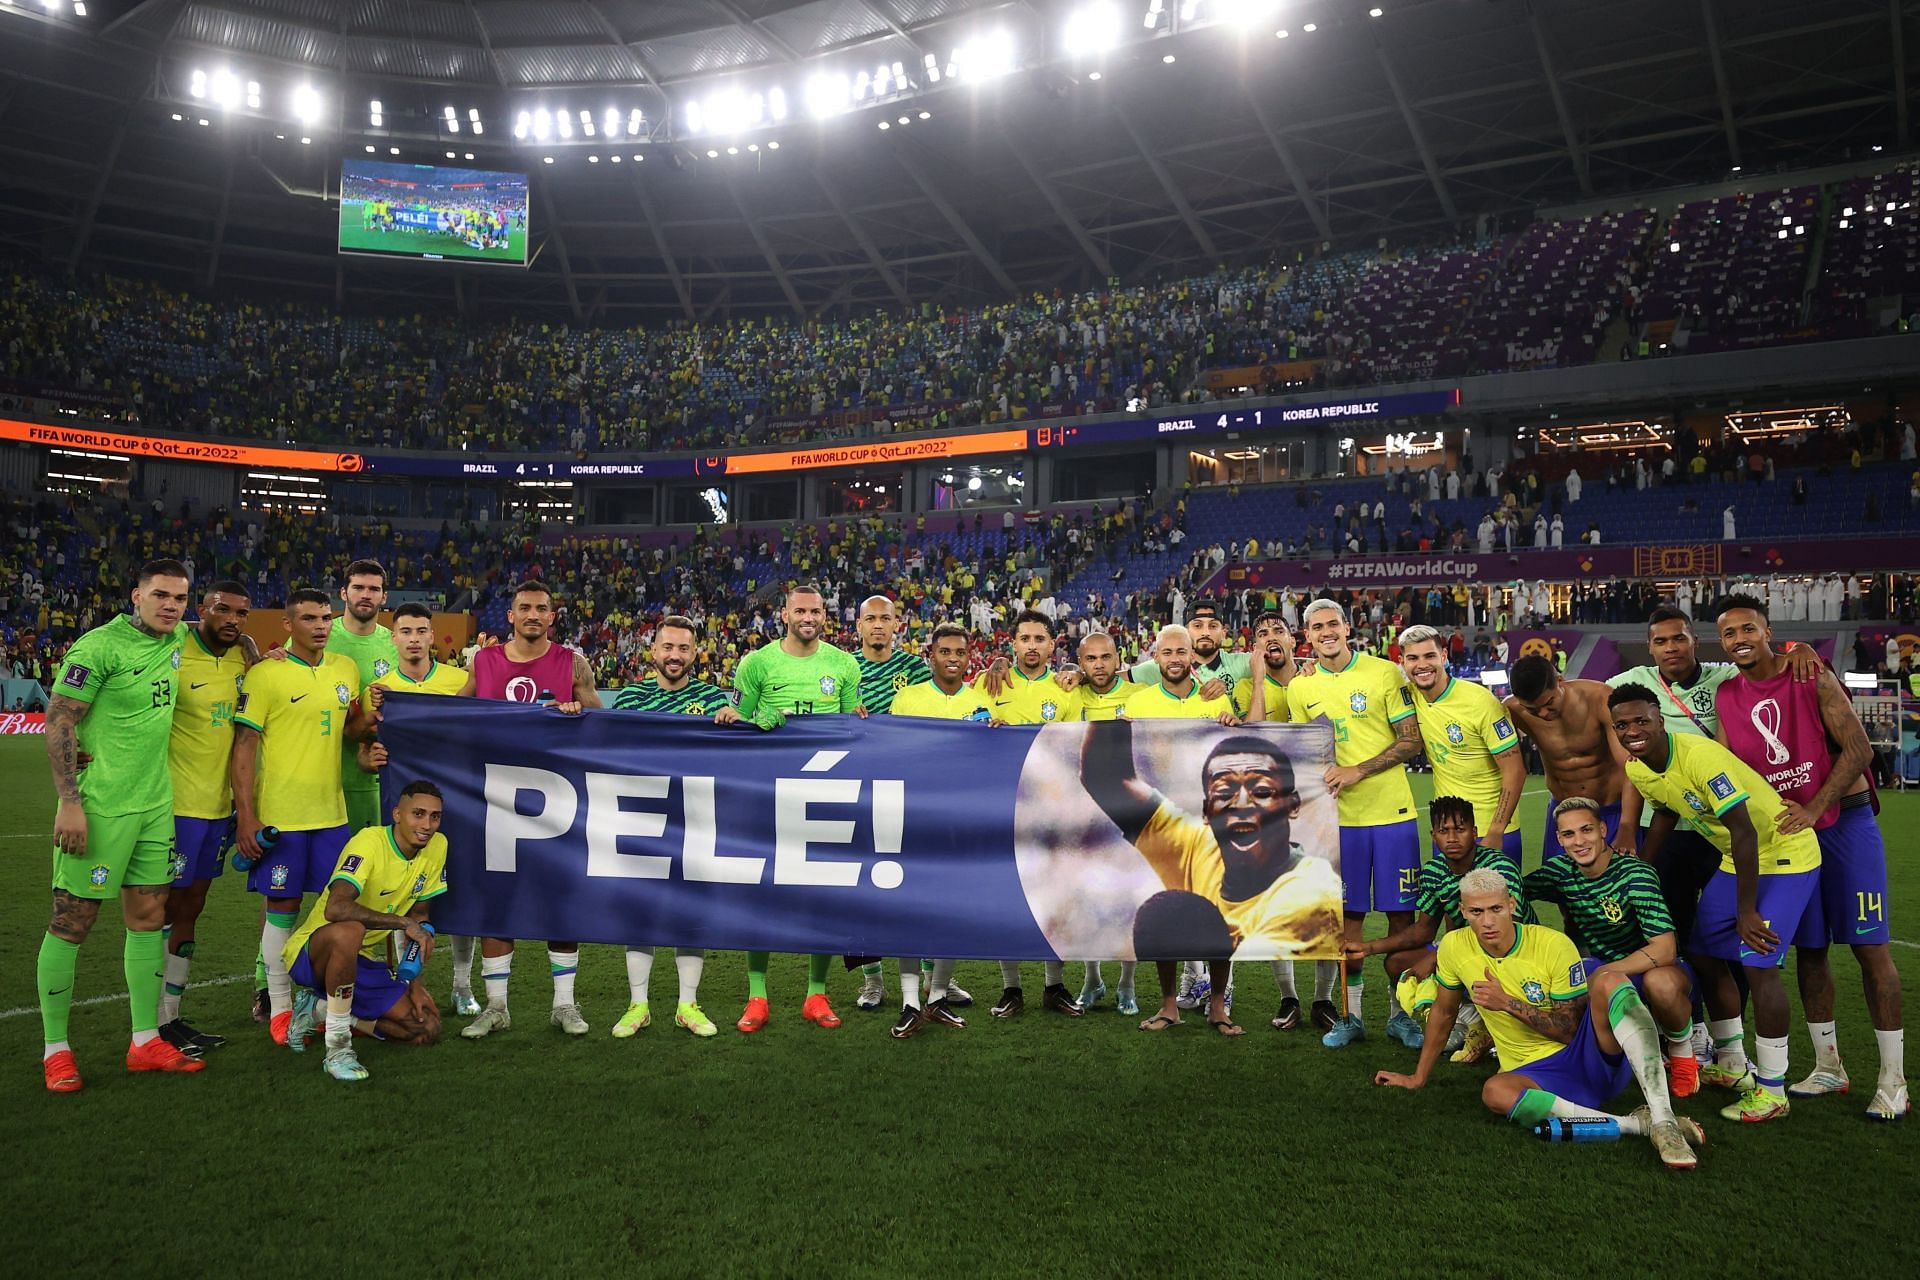 ब्राजील की टीम ने अपने लेजेंड पेले की सेहत के लिए इस अंदाज में प्रार्थना की